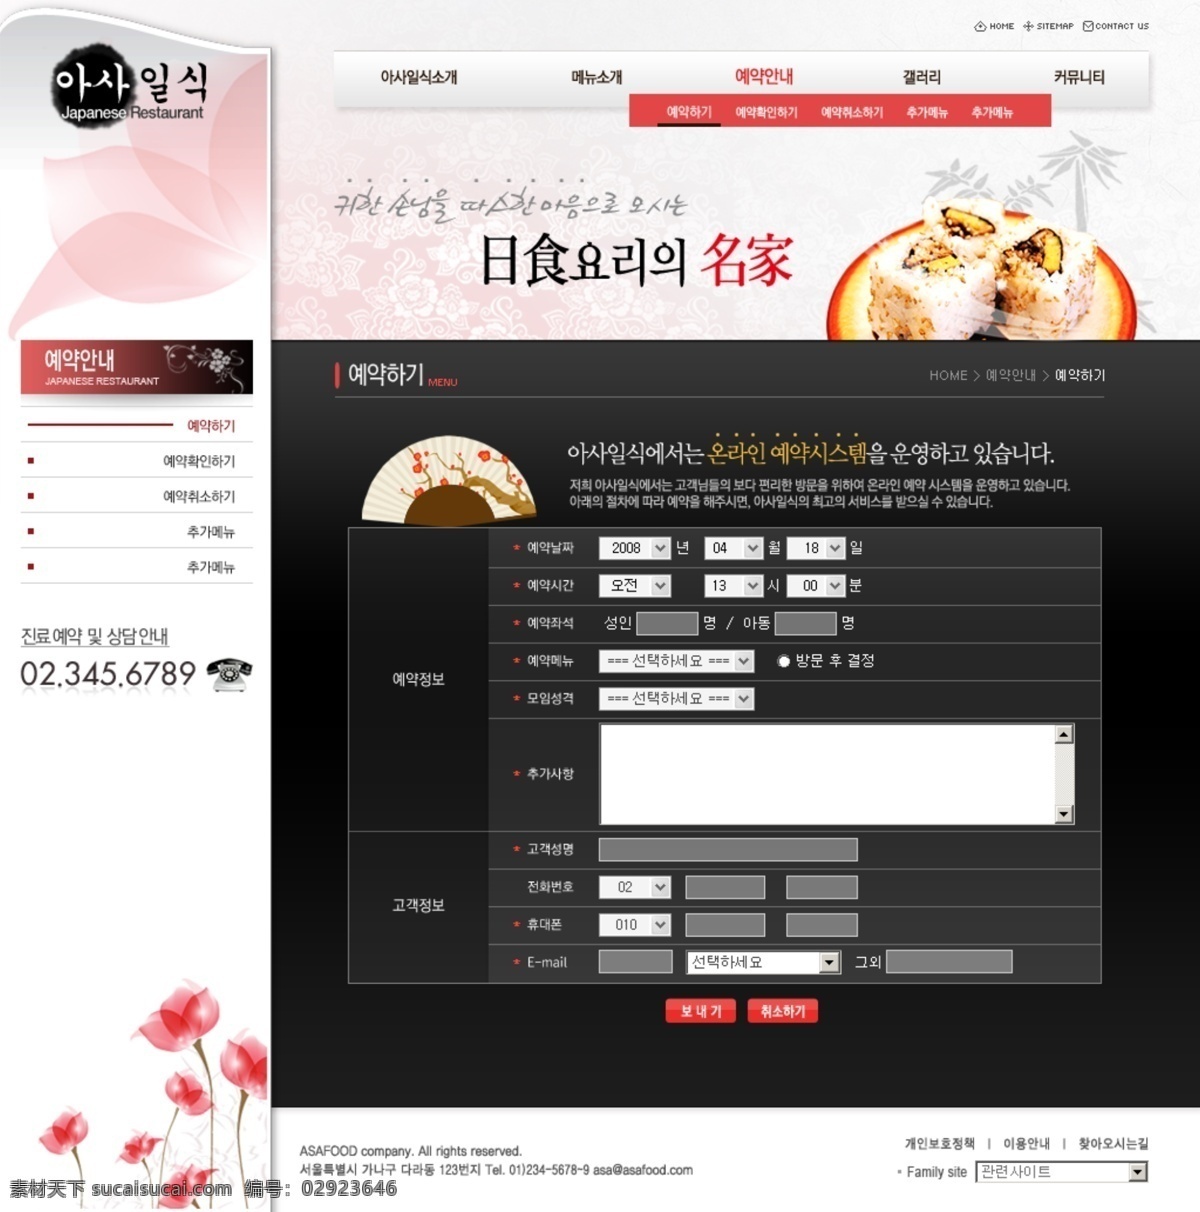 日本料理网站 ui设计 韩国美食 韩国网页设计 韩国网站 界面设计 日本料理 食物原料 网页版式 网页布局 网页界面 网页模板 网页网站 首页设计模板 网页素材